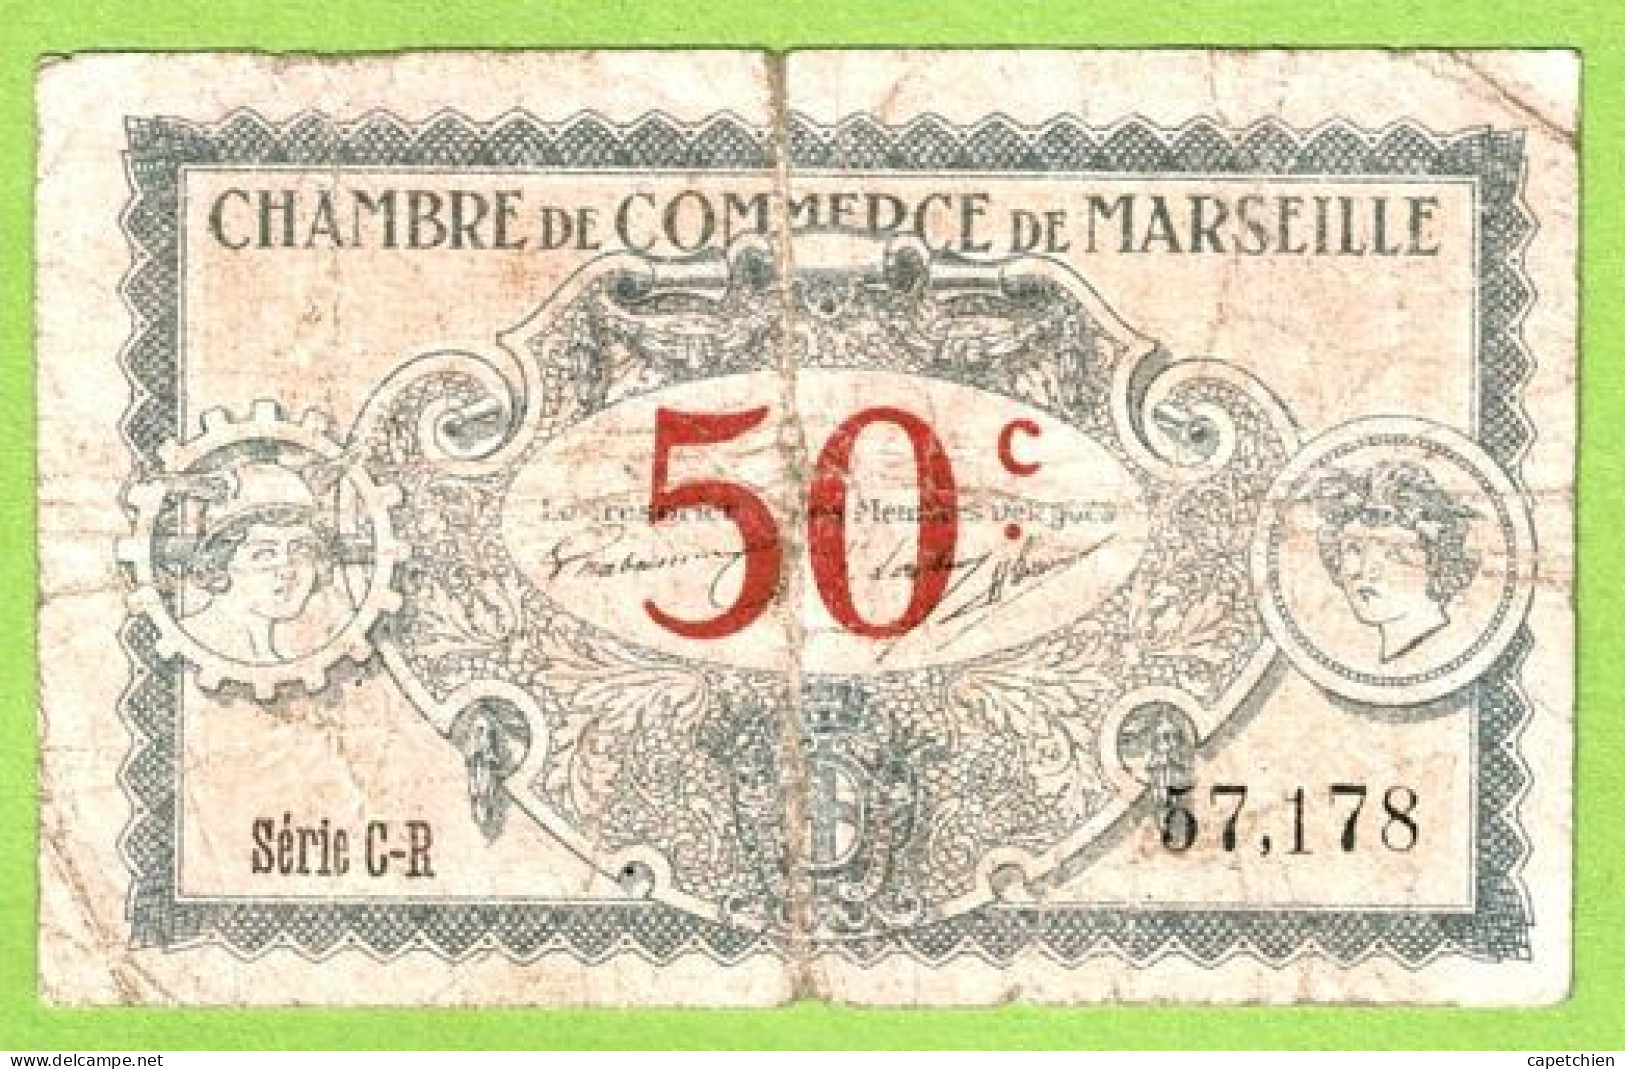 FRANCE / CHAMBRE De COMMERCE / MARSEILLE / 50 CENTIMES / 1917 / N° 57178 / SERIE C - R - Cámara De Comercio